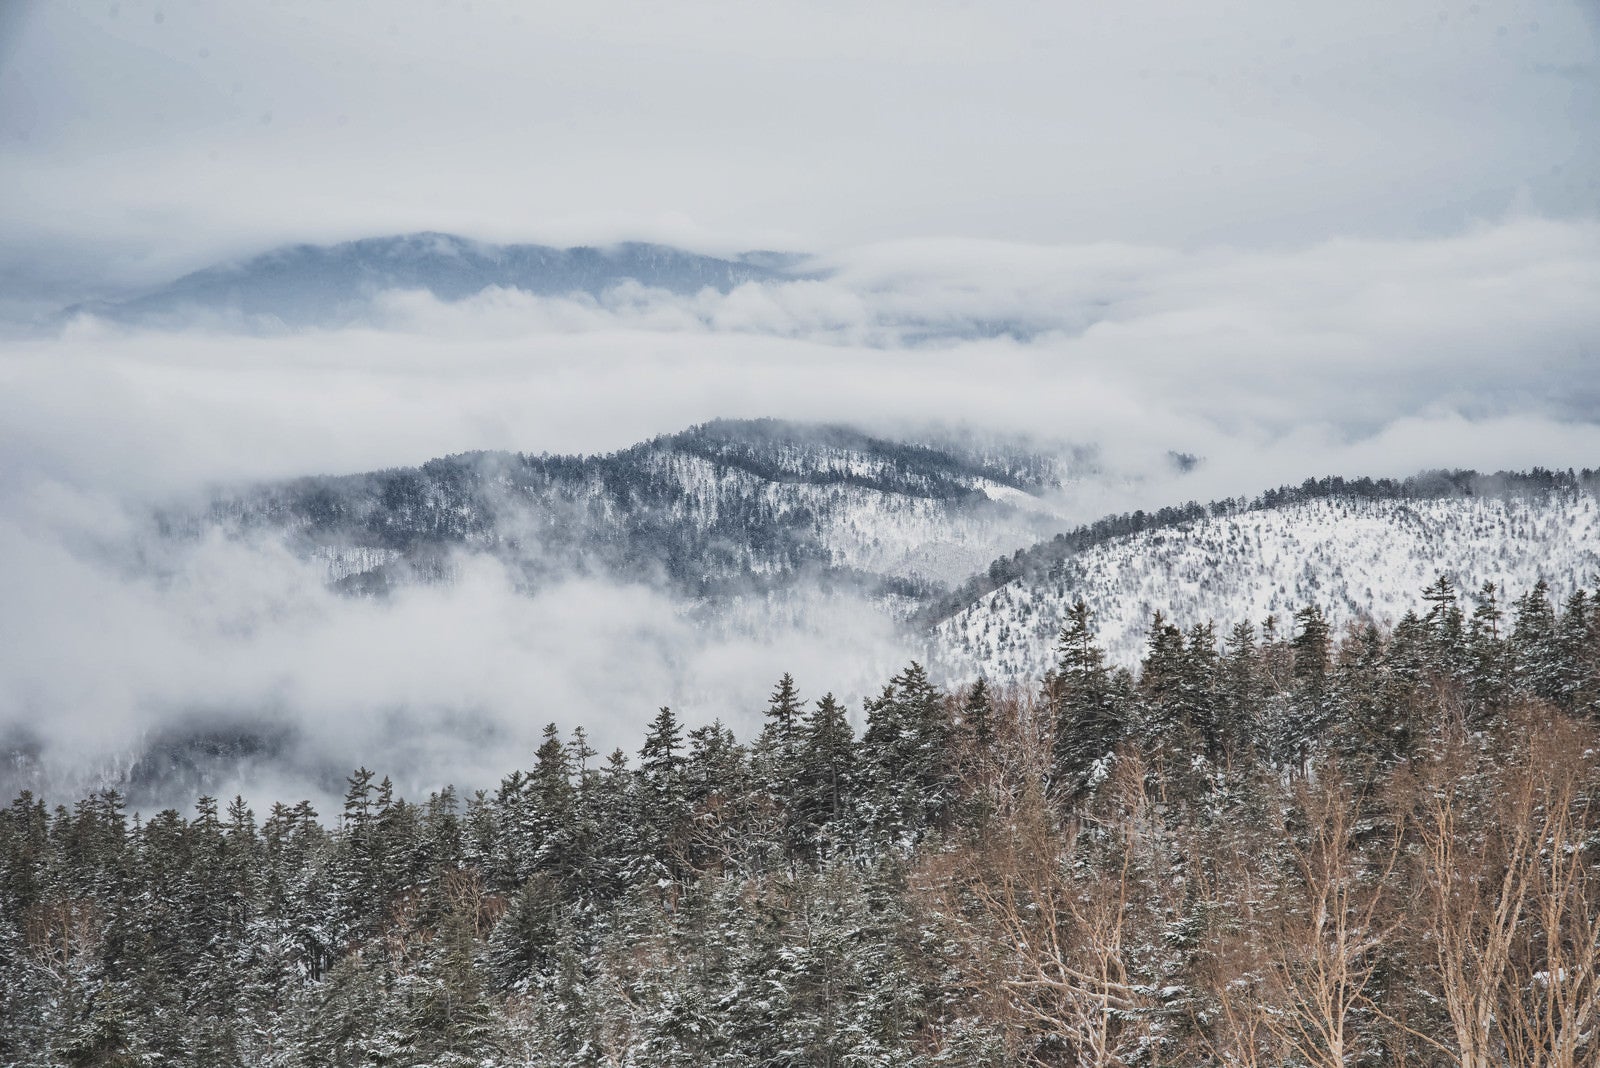 「覆われた雲の中から顔を出す雪山」の写真